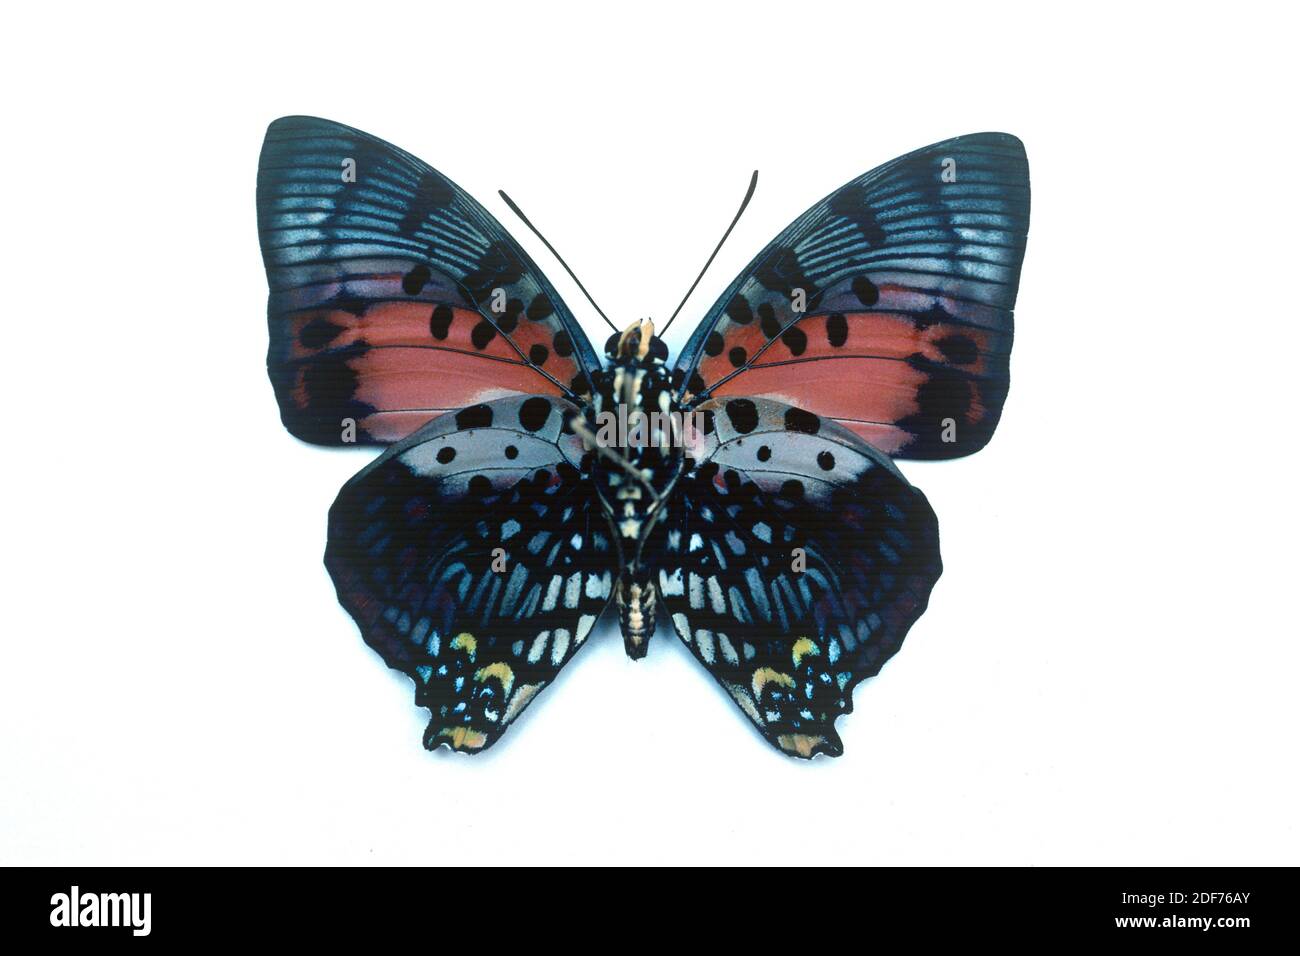 Leuchtend rote Charaxes (Charaxes zingha) ist ein Schmetterling, der in Zentralafrika beheimatet ist. Männlich, ventrale Oberfläche. Stockfoto